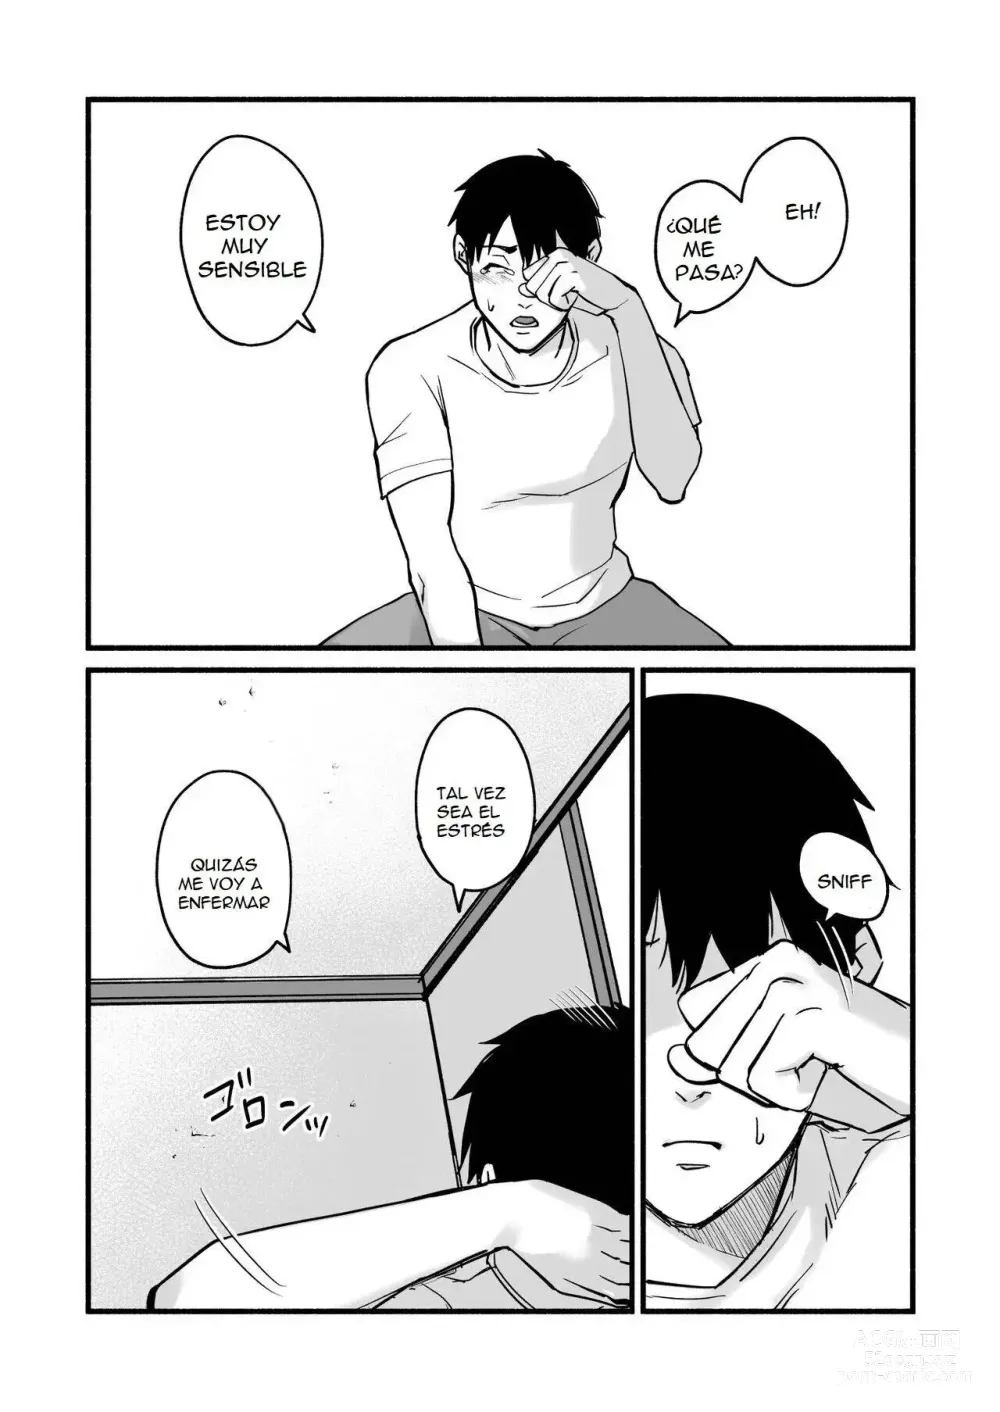 Page 121 of doujinshi Miho-chan, Kimi ga Suki datta.